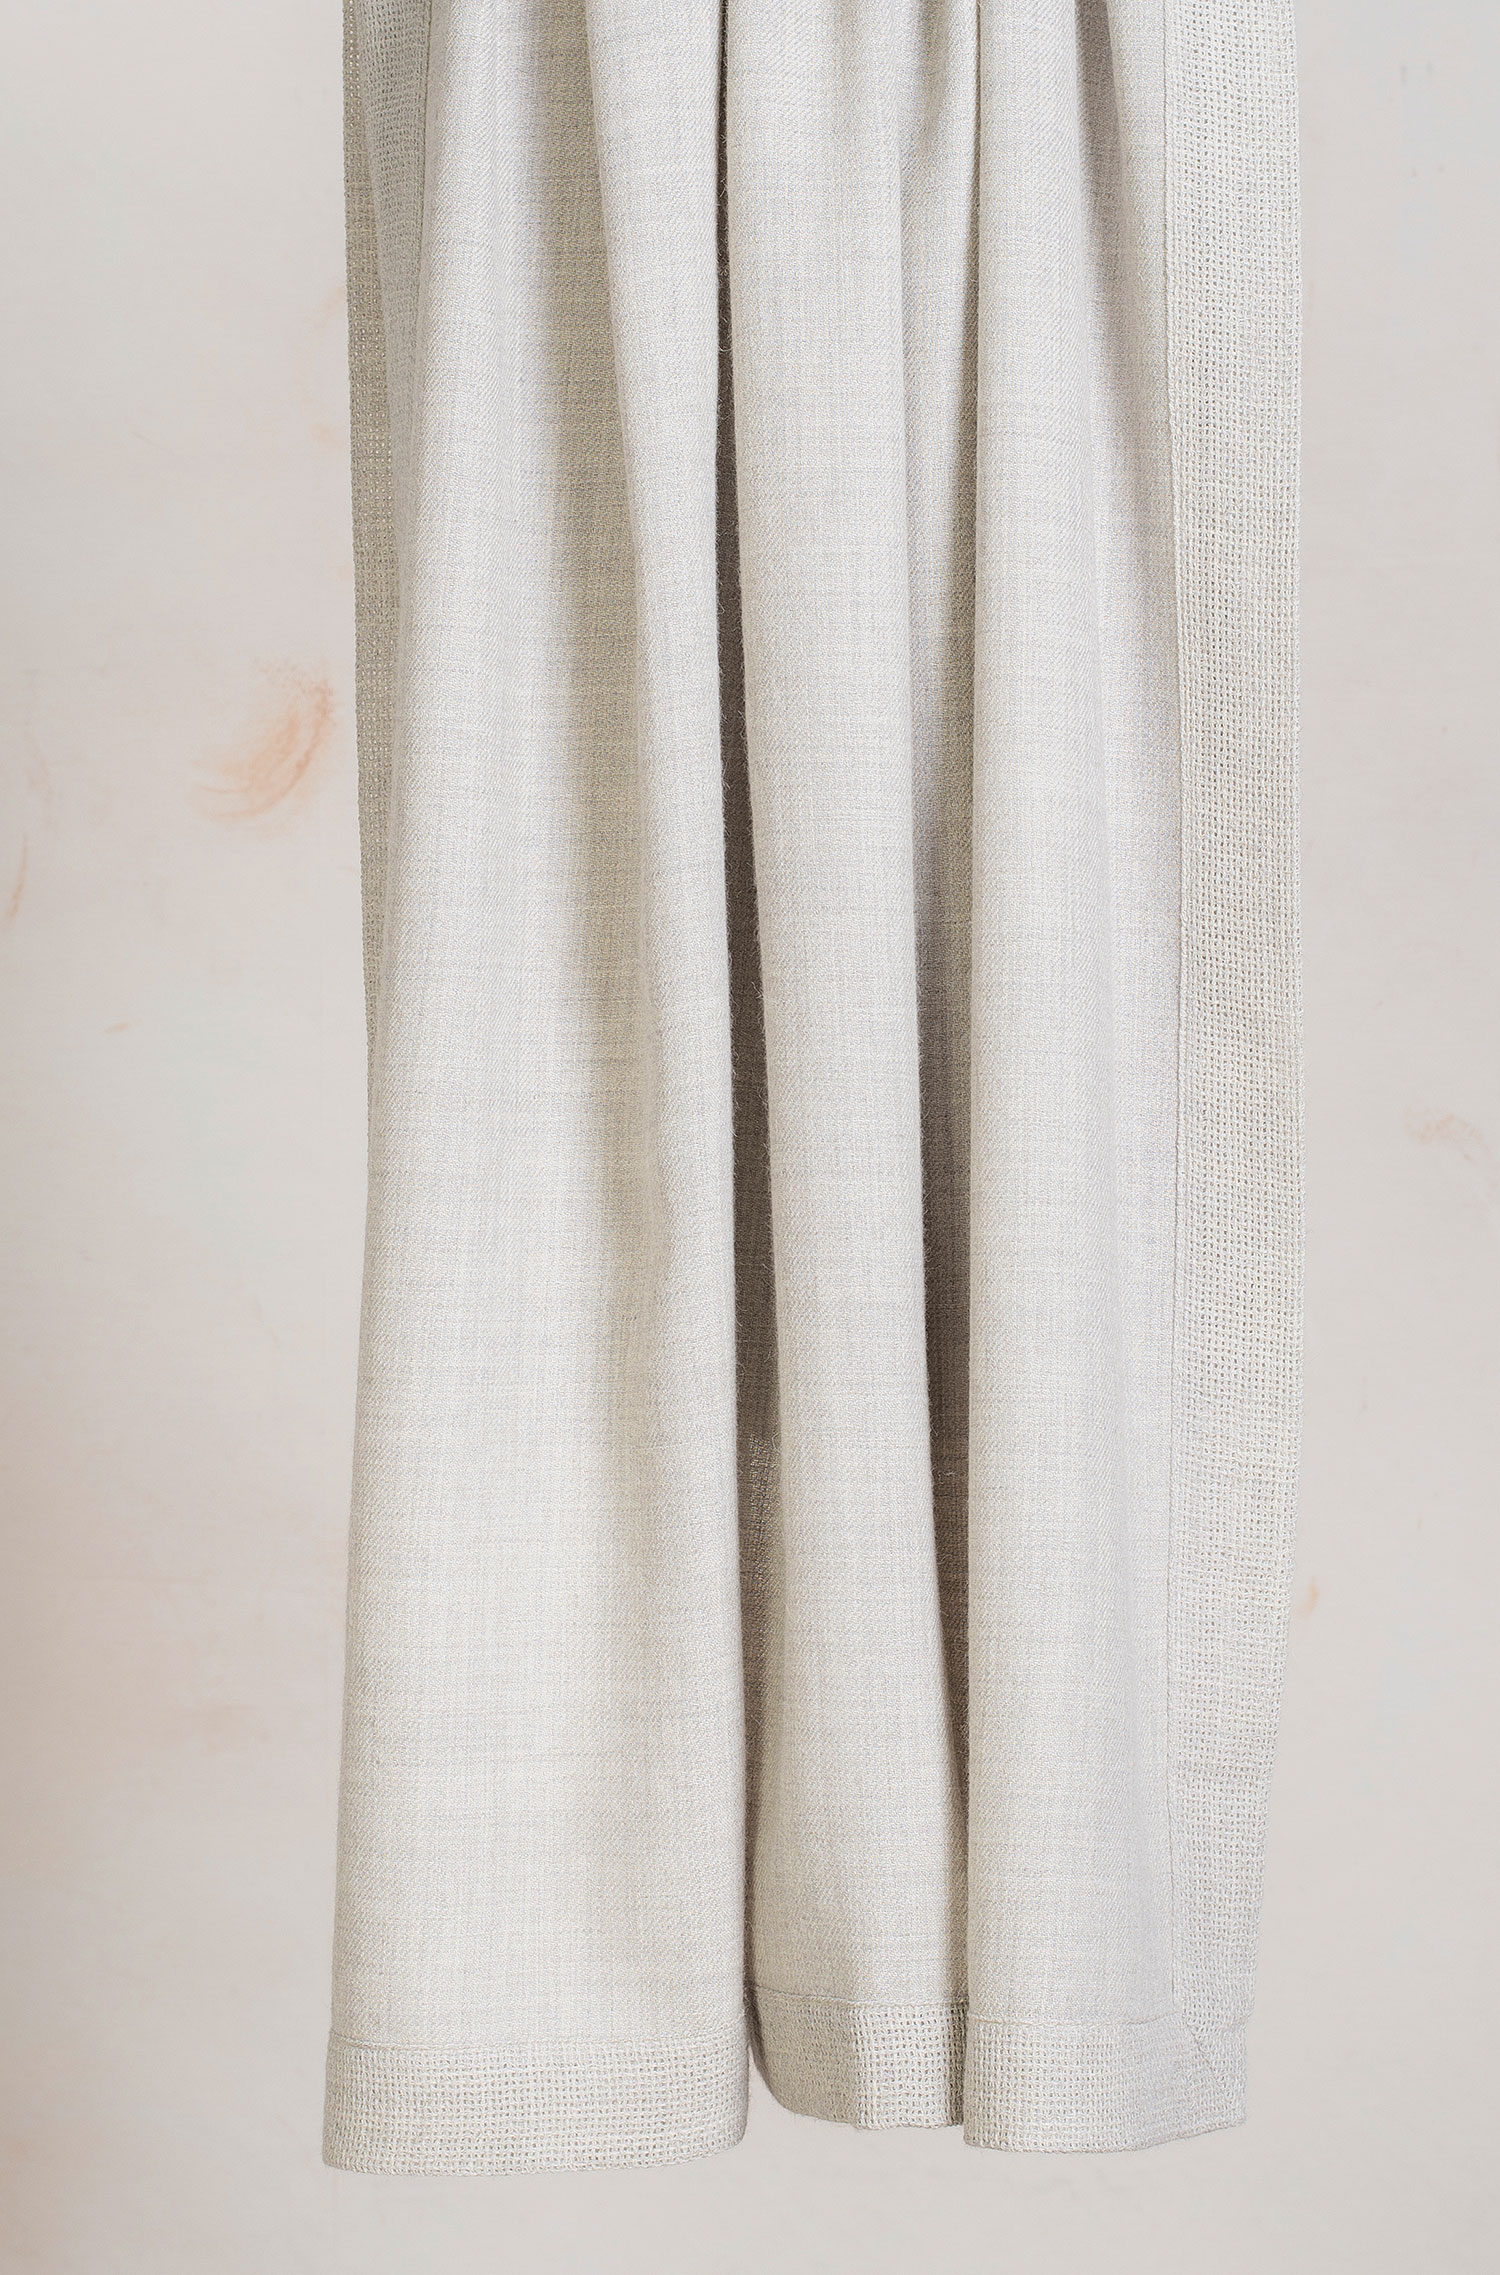 Decke ROMAIN in der Farbe grau